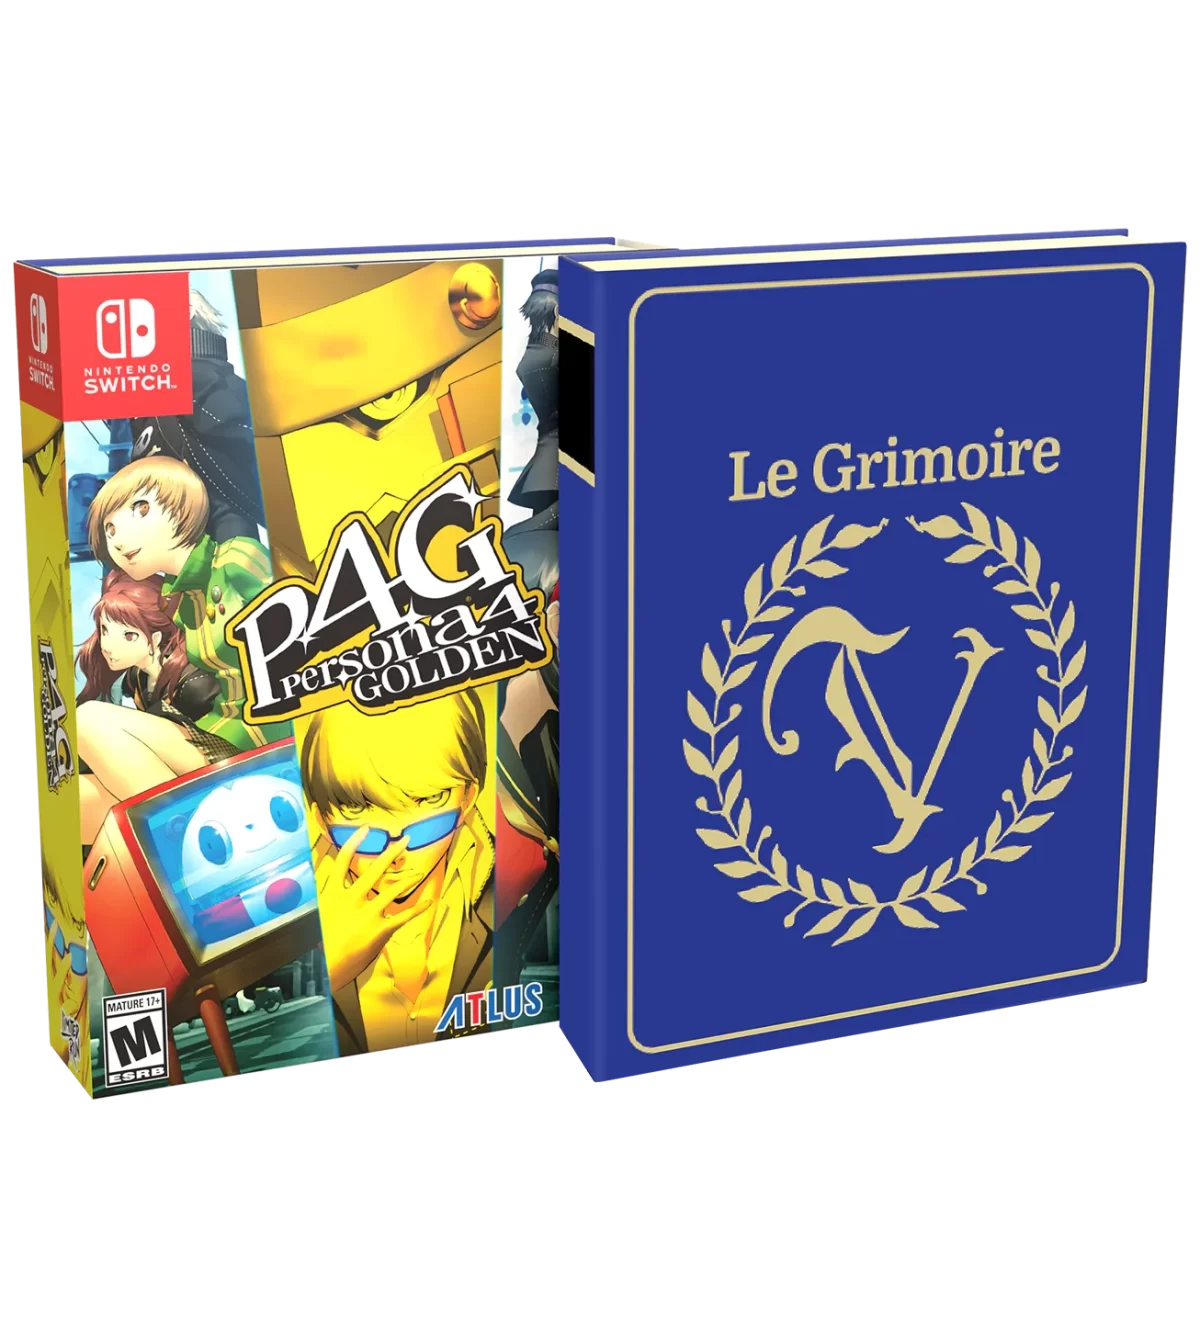 Persona 4 Golden Le Grimoire Edition Visual 3